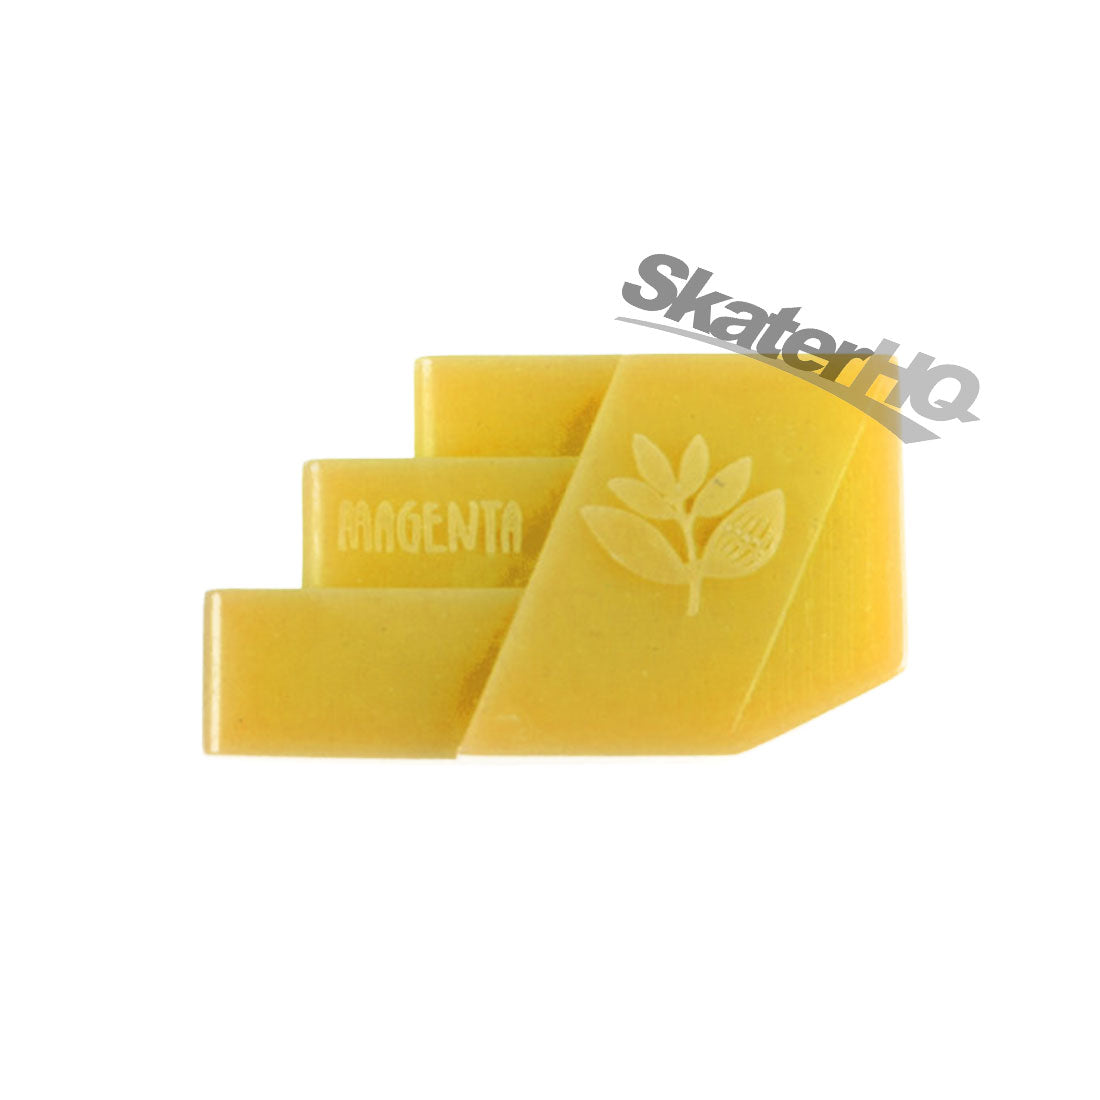 Magenta Stair Grinder Wax - Yellow Skateboard Accessories